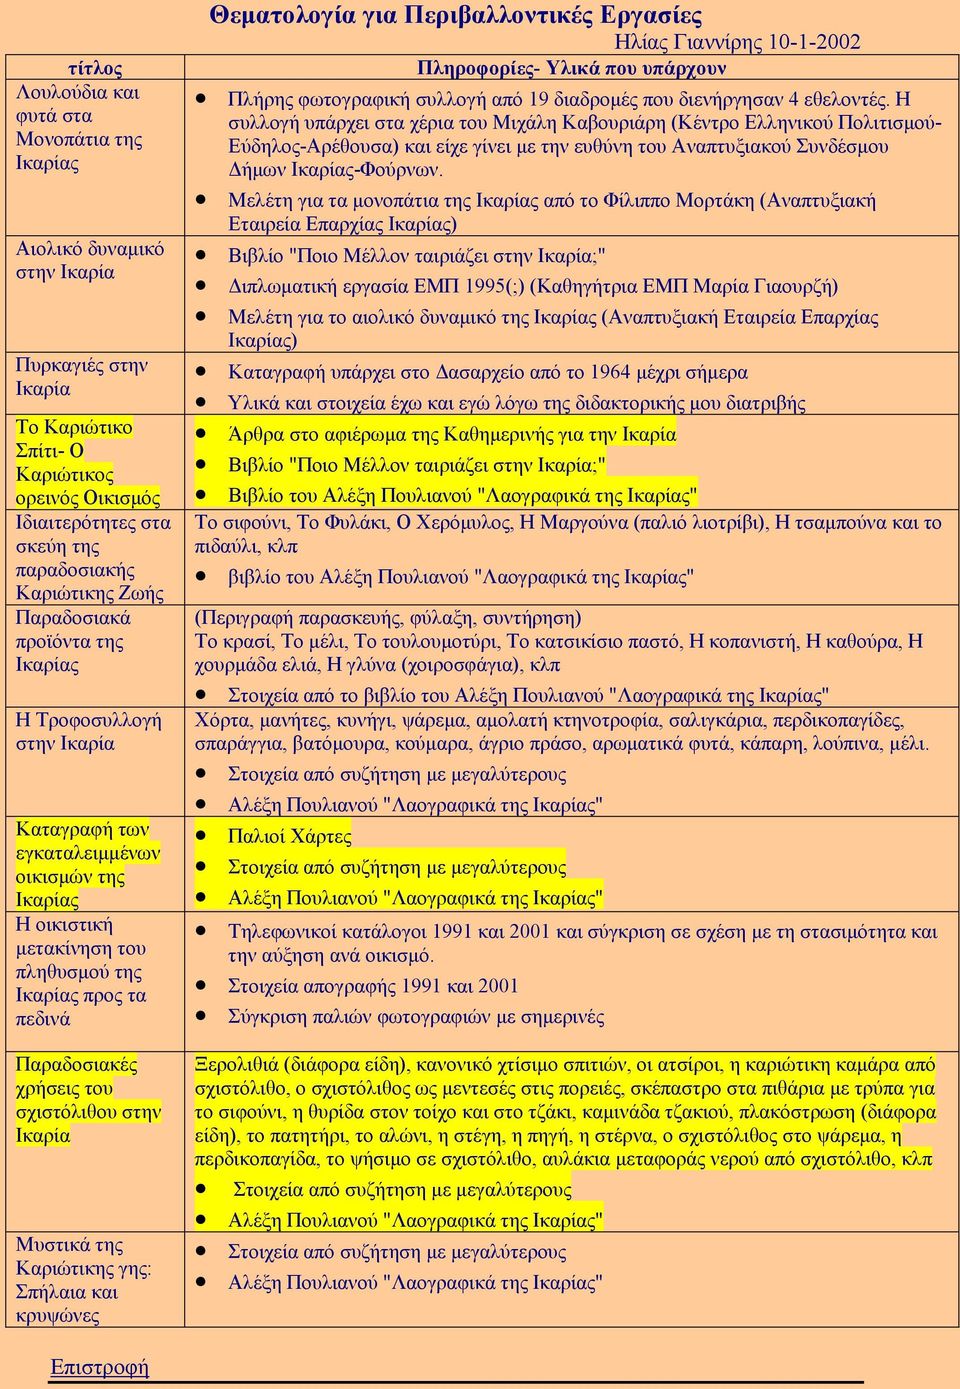 Παραδοσιακές χρήσεις του σχιστόλιθου στην Ικαρία Μυστικά της Καριώτικης γης: Σπήλαια και κρυψώνες Θεµατολογία για Περιβαλλοντικές Εργασίες Ηλίας Γιαννίρης 10-1-2002 Πληροφορίες- Υλικά που υπάρχουν